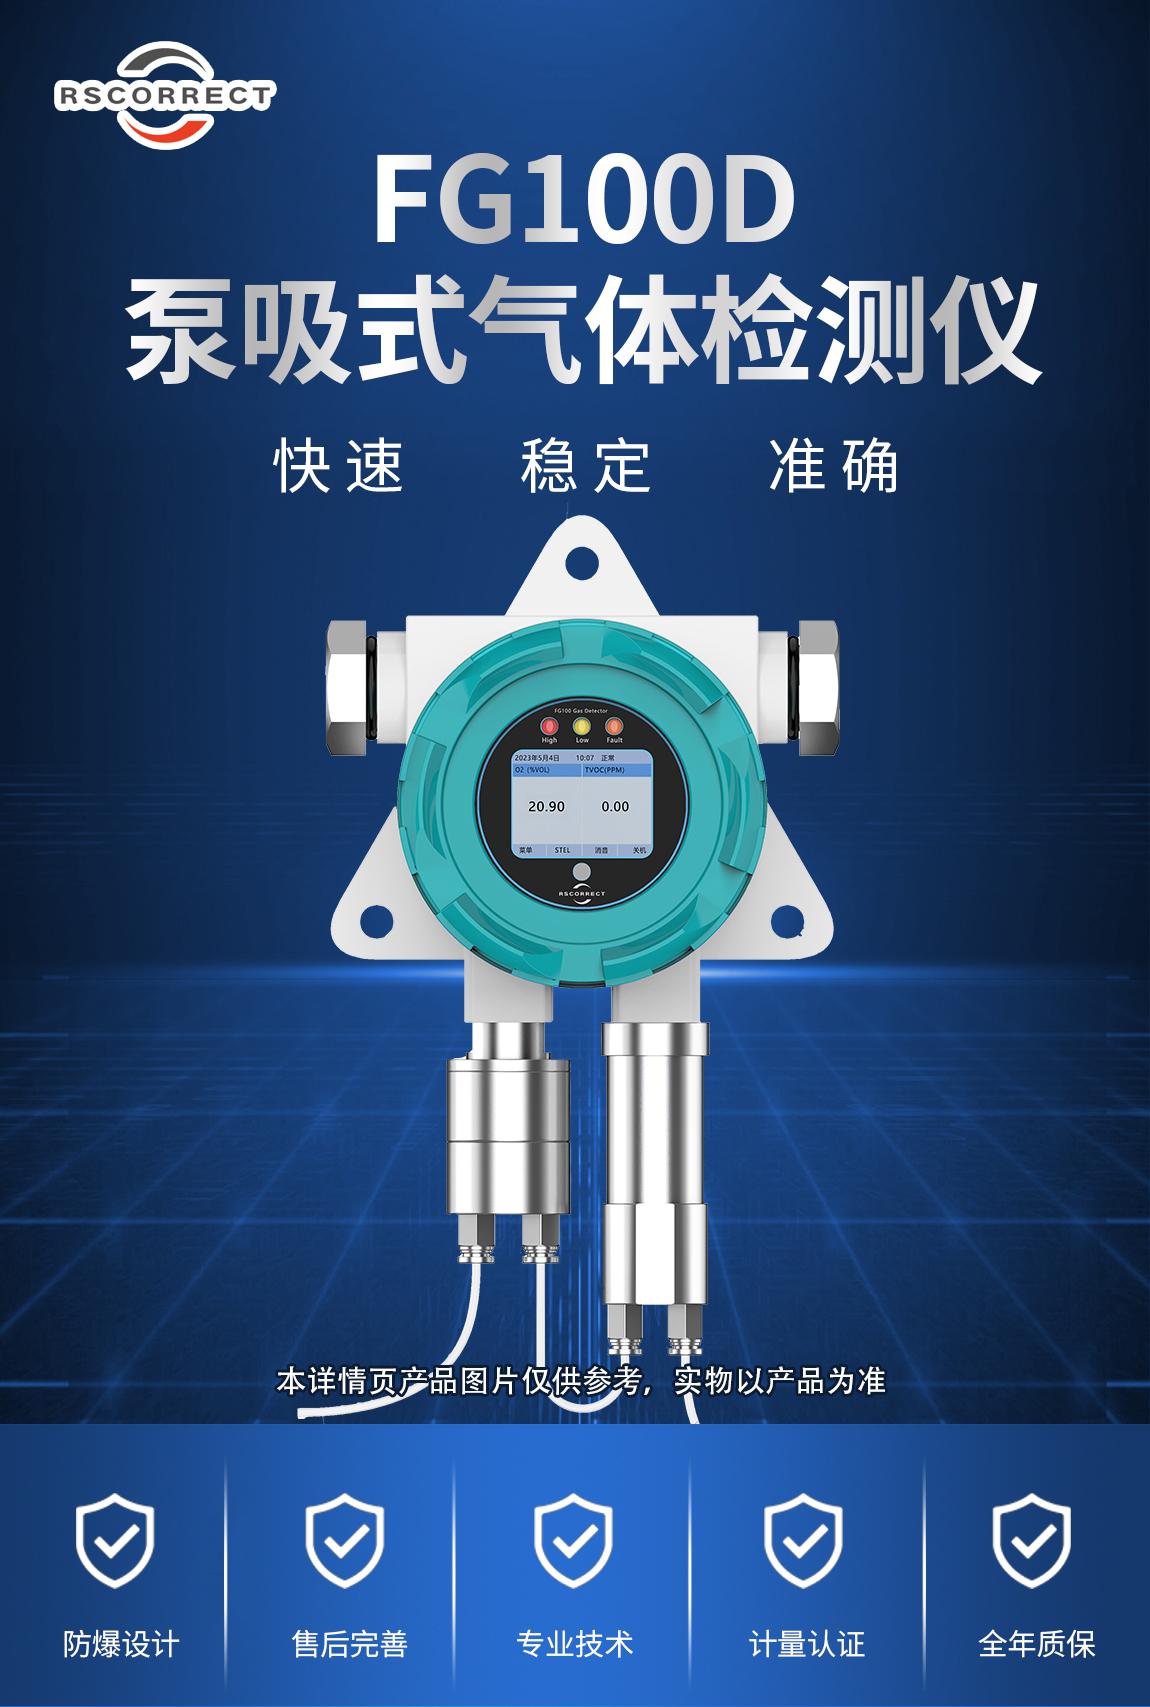 1-FG1000D泵吸式二氧化硫检测仪-产品介绍.jpg